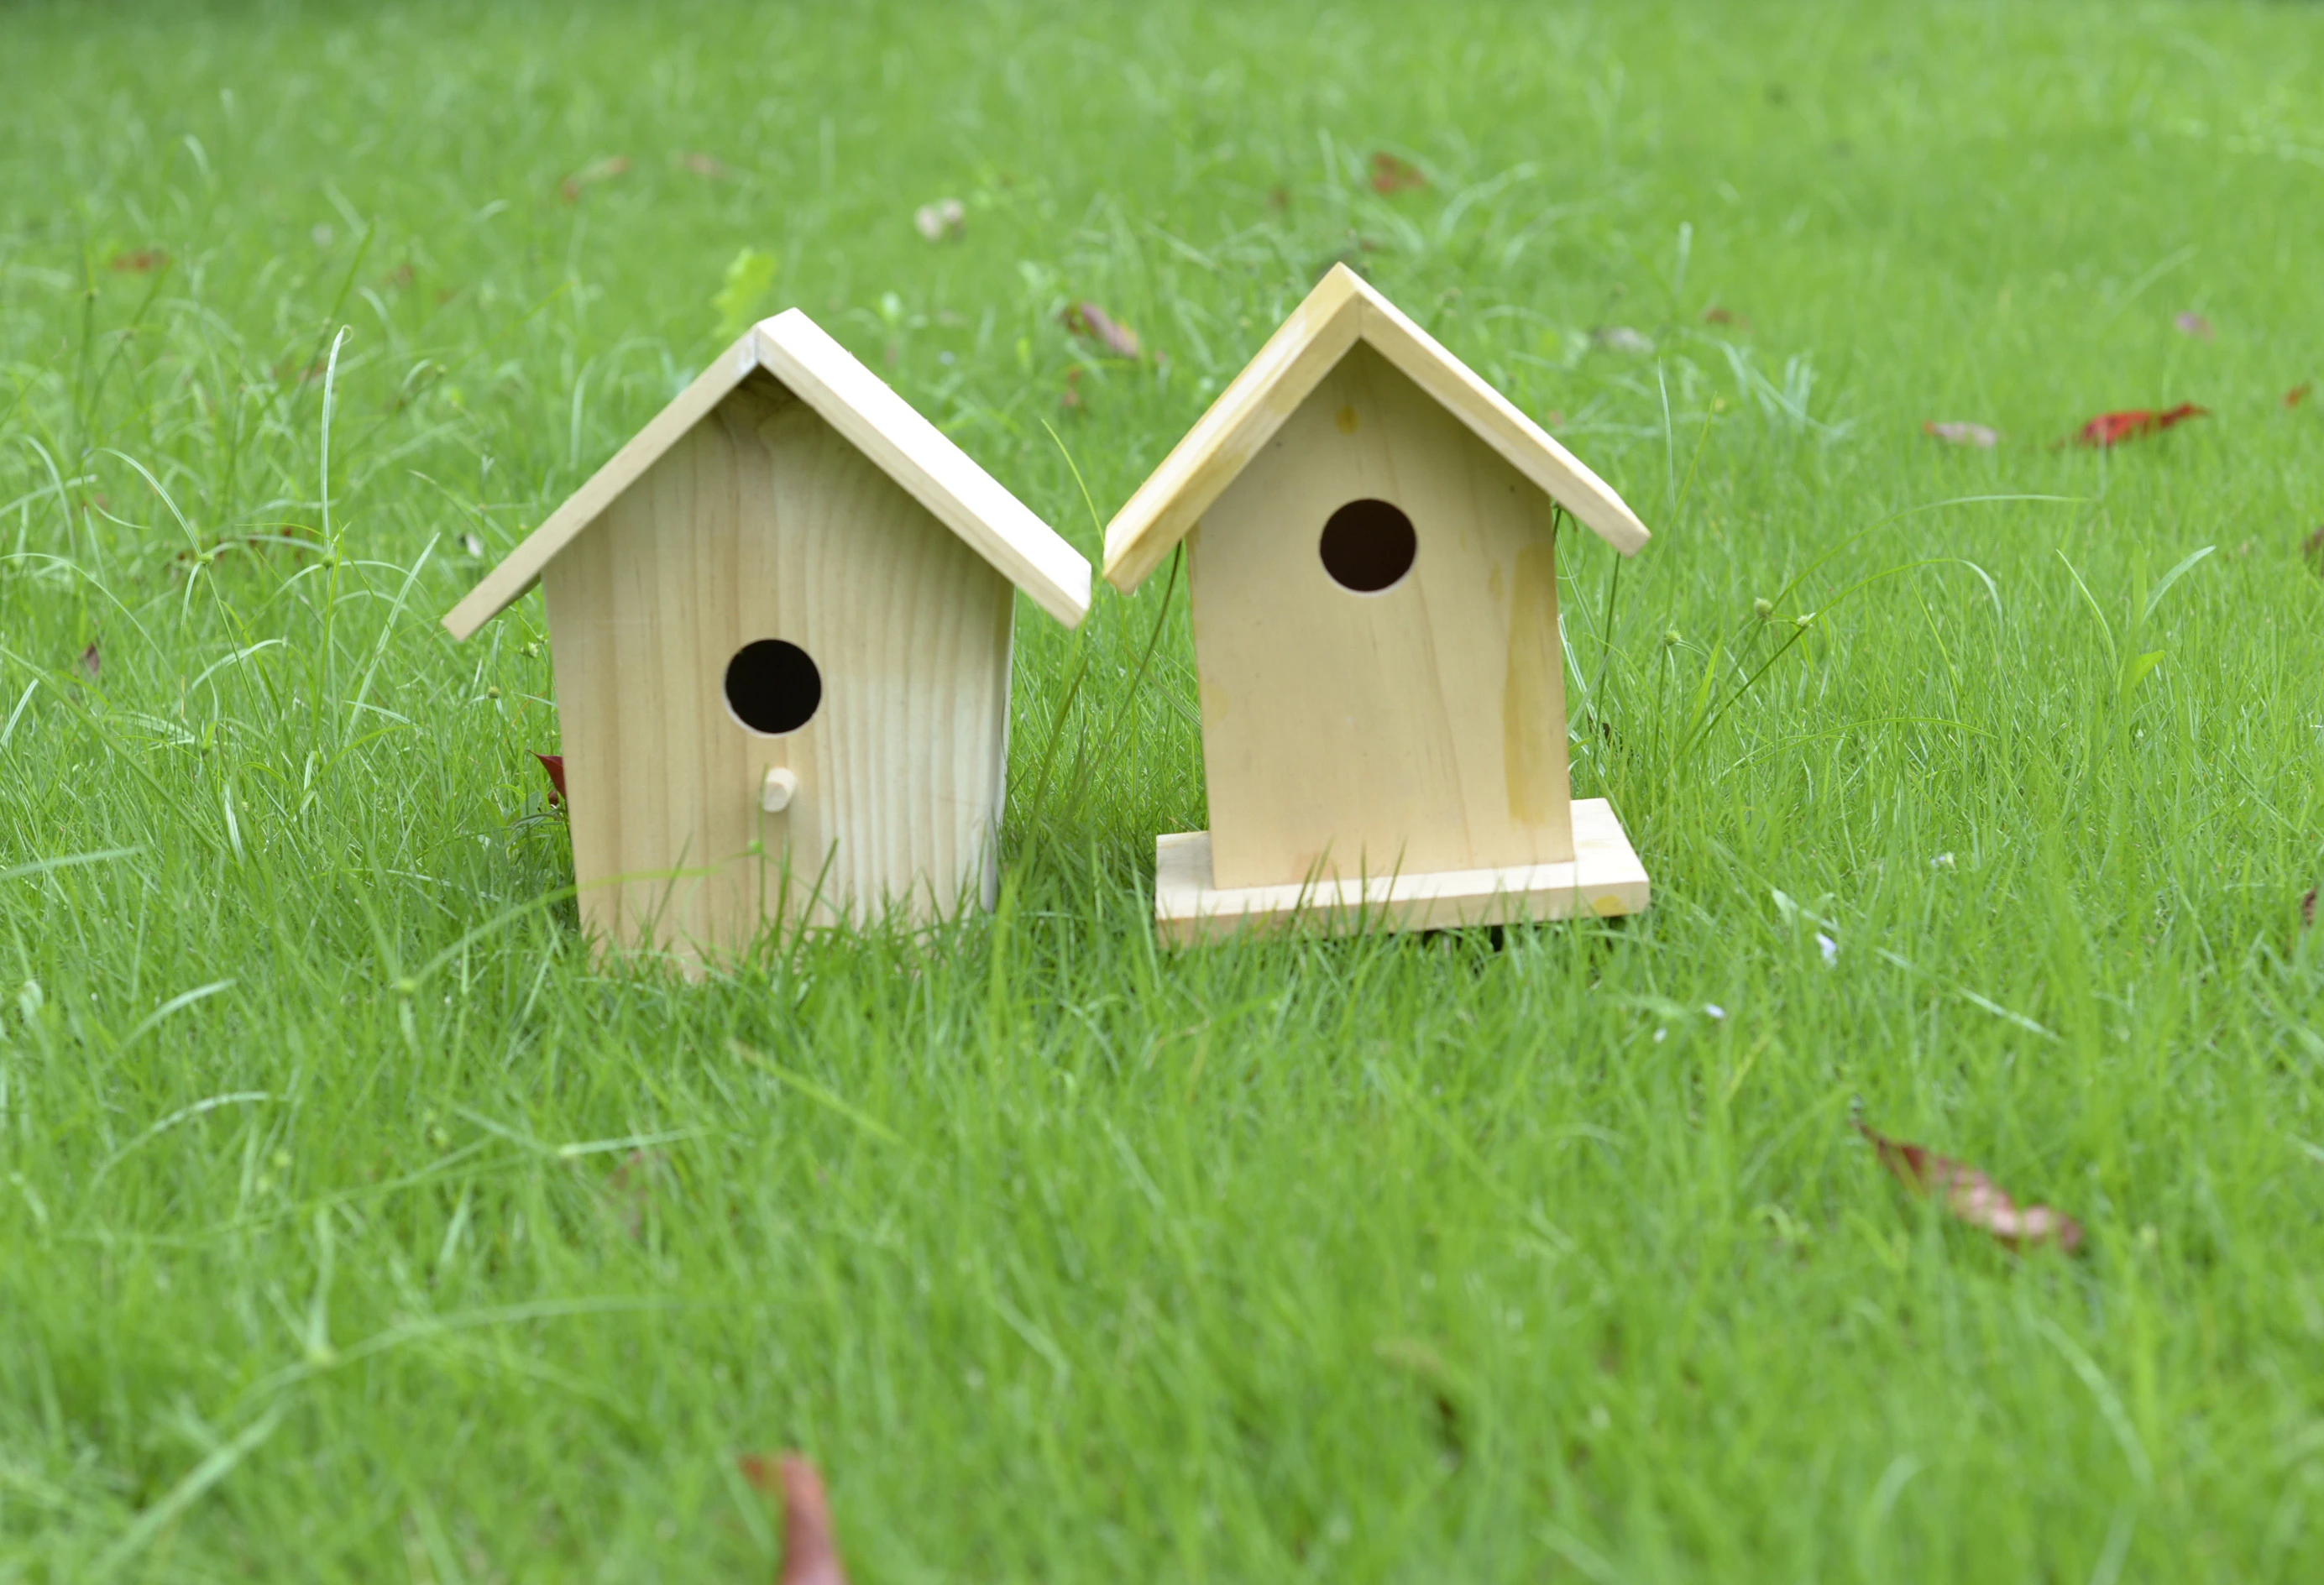 Factory customized DIY birds nest indoor and outdoor birdhouse handmade wooden solid wood bird nest pastoral style